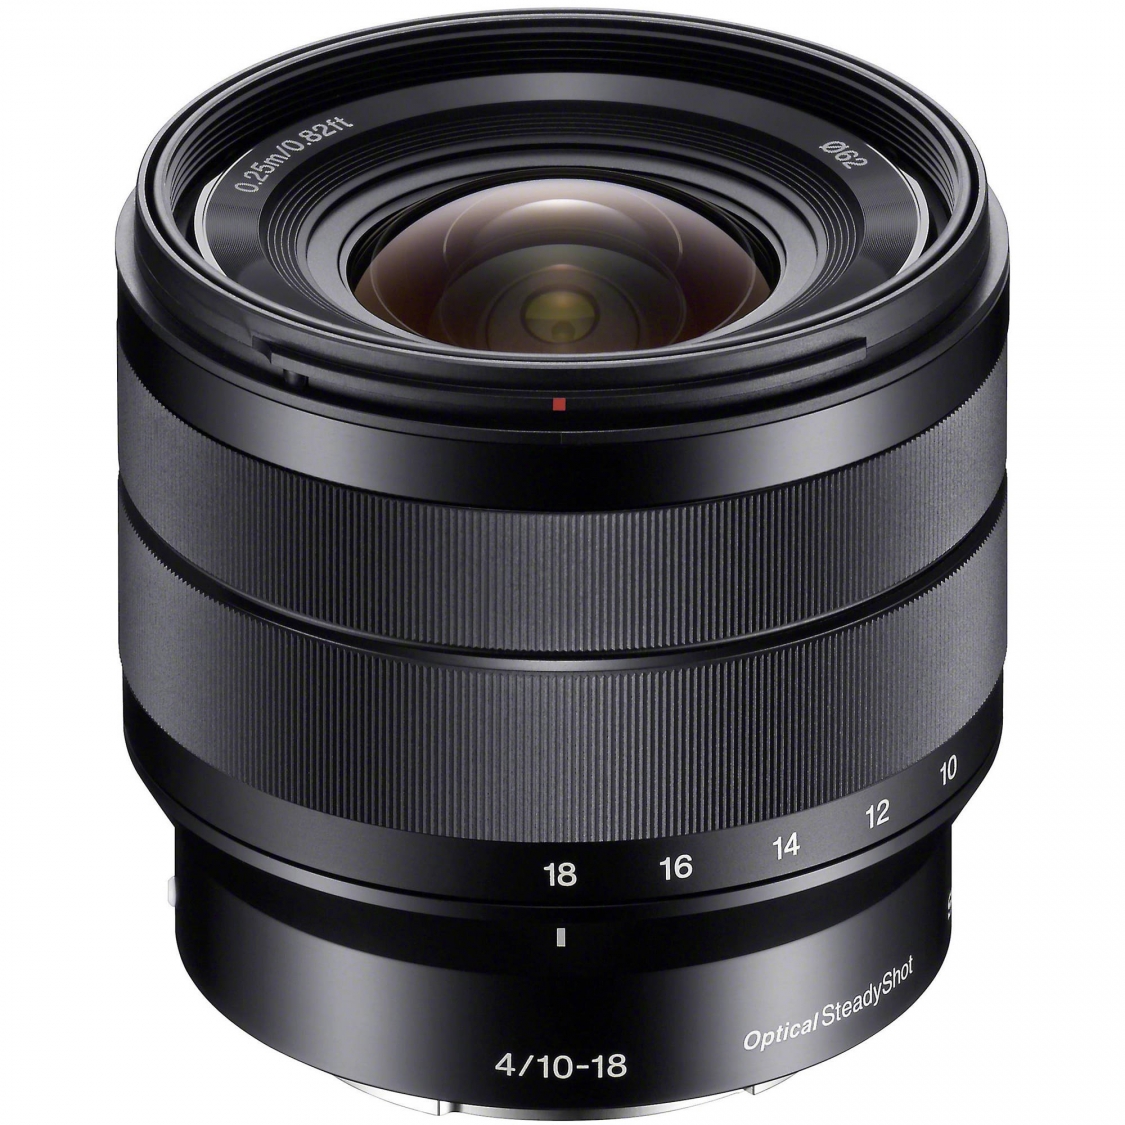 Sony E 10-18mm F4.0 OSS Lens